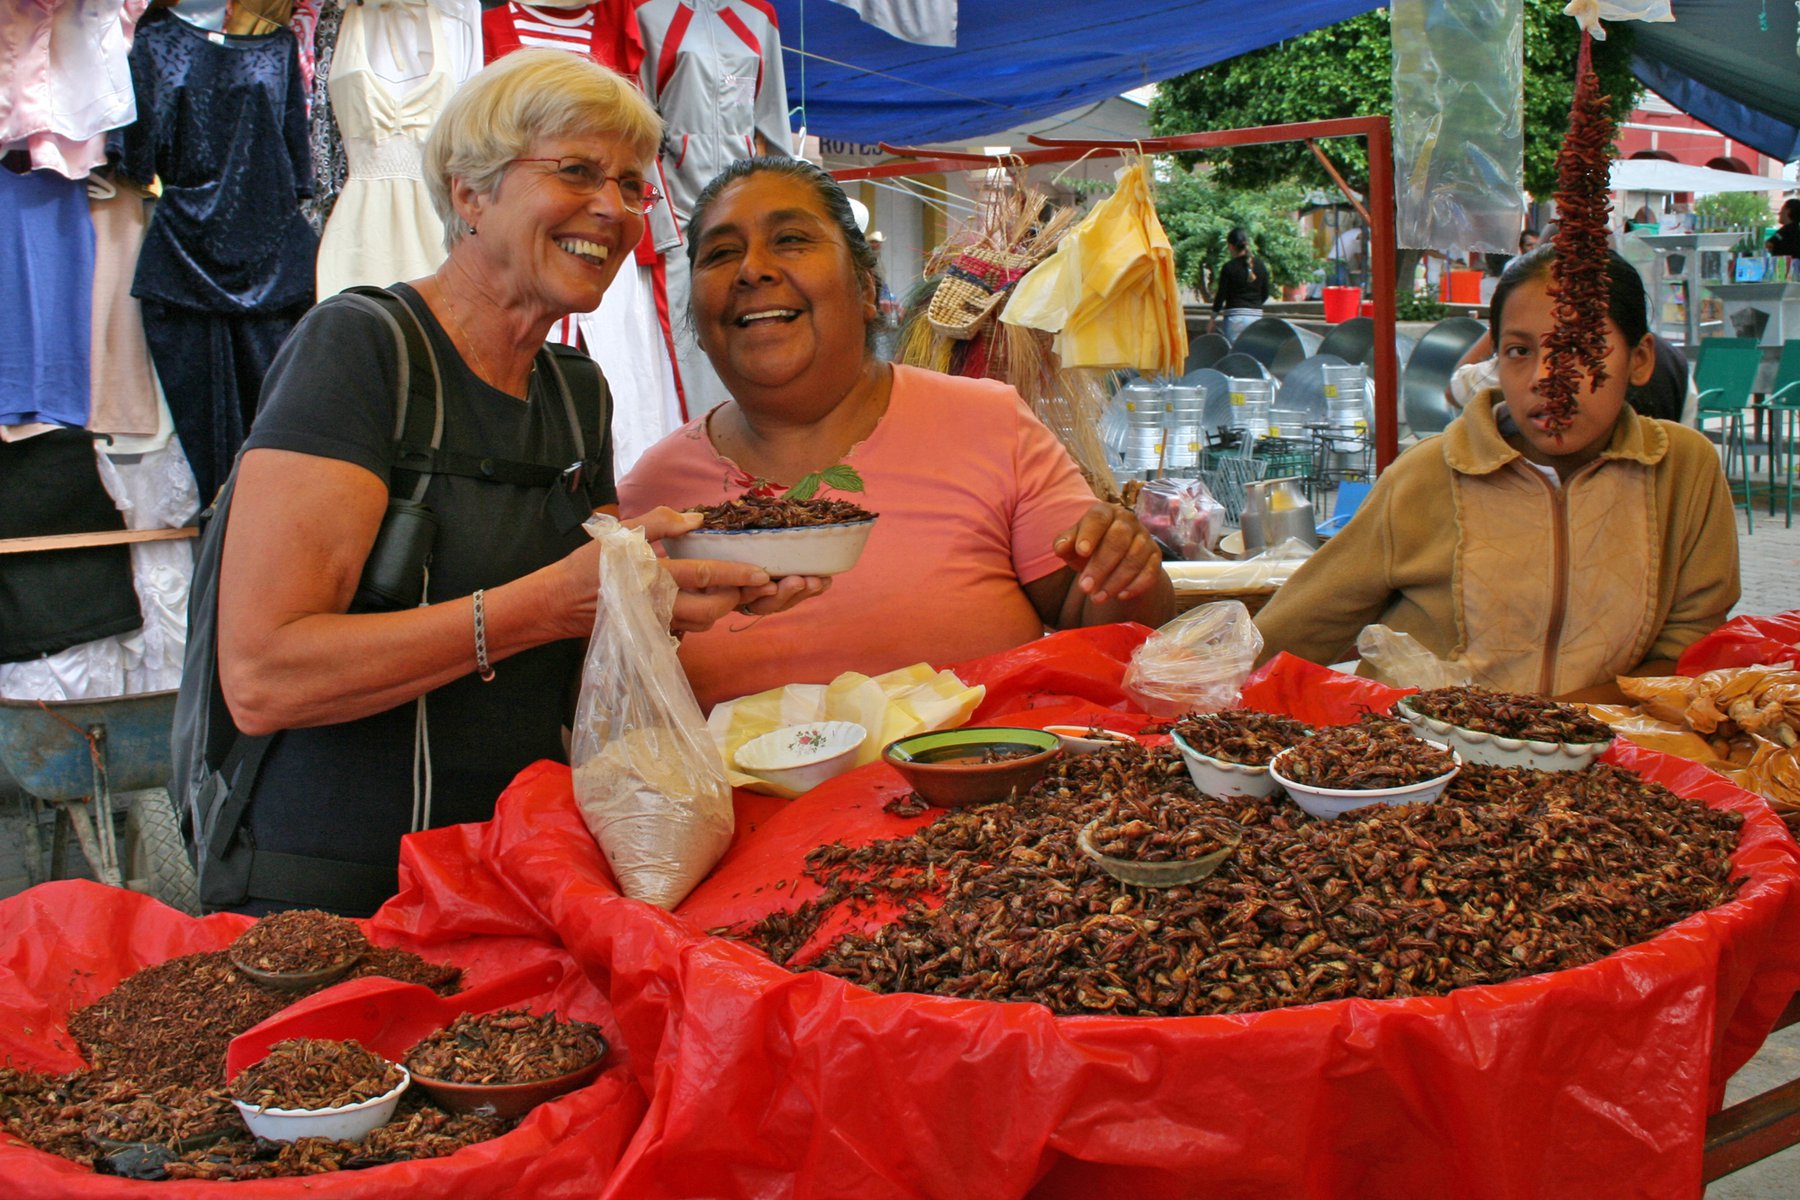 Alla älskar mexikansk mat. Smaka på rostade gräshoppor på marknaden i Oaxaca